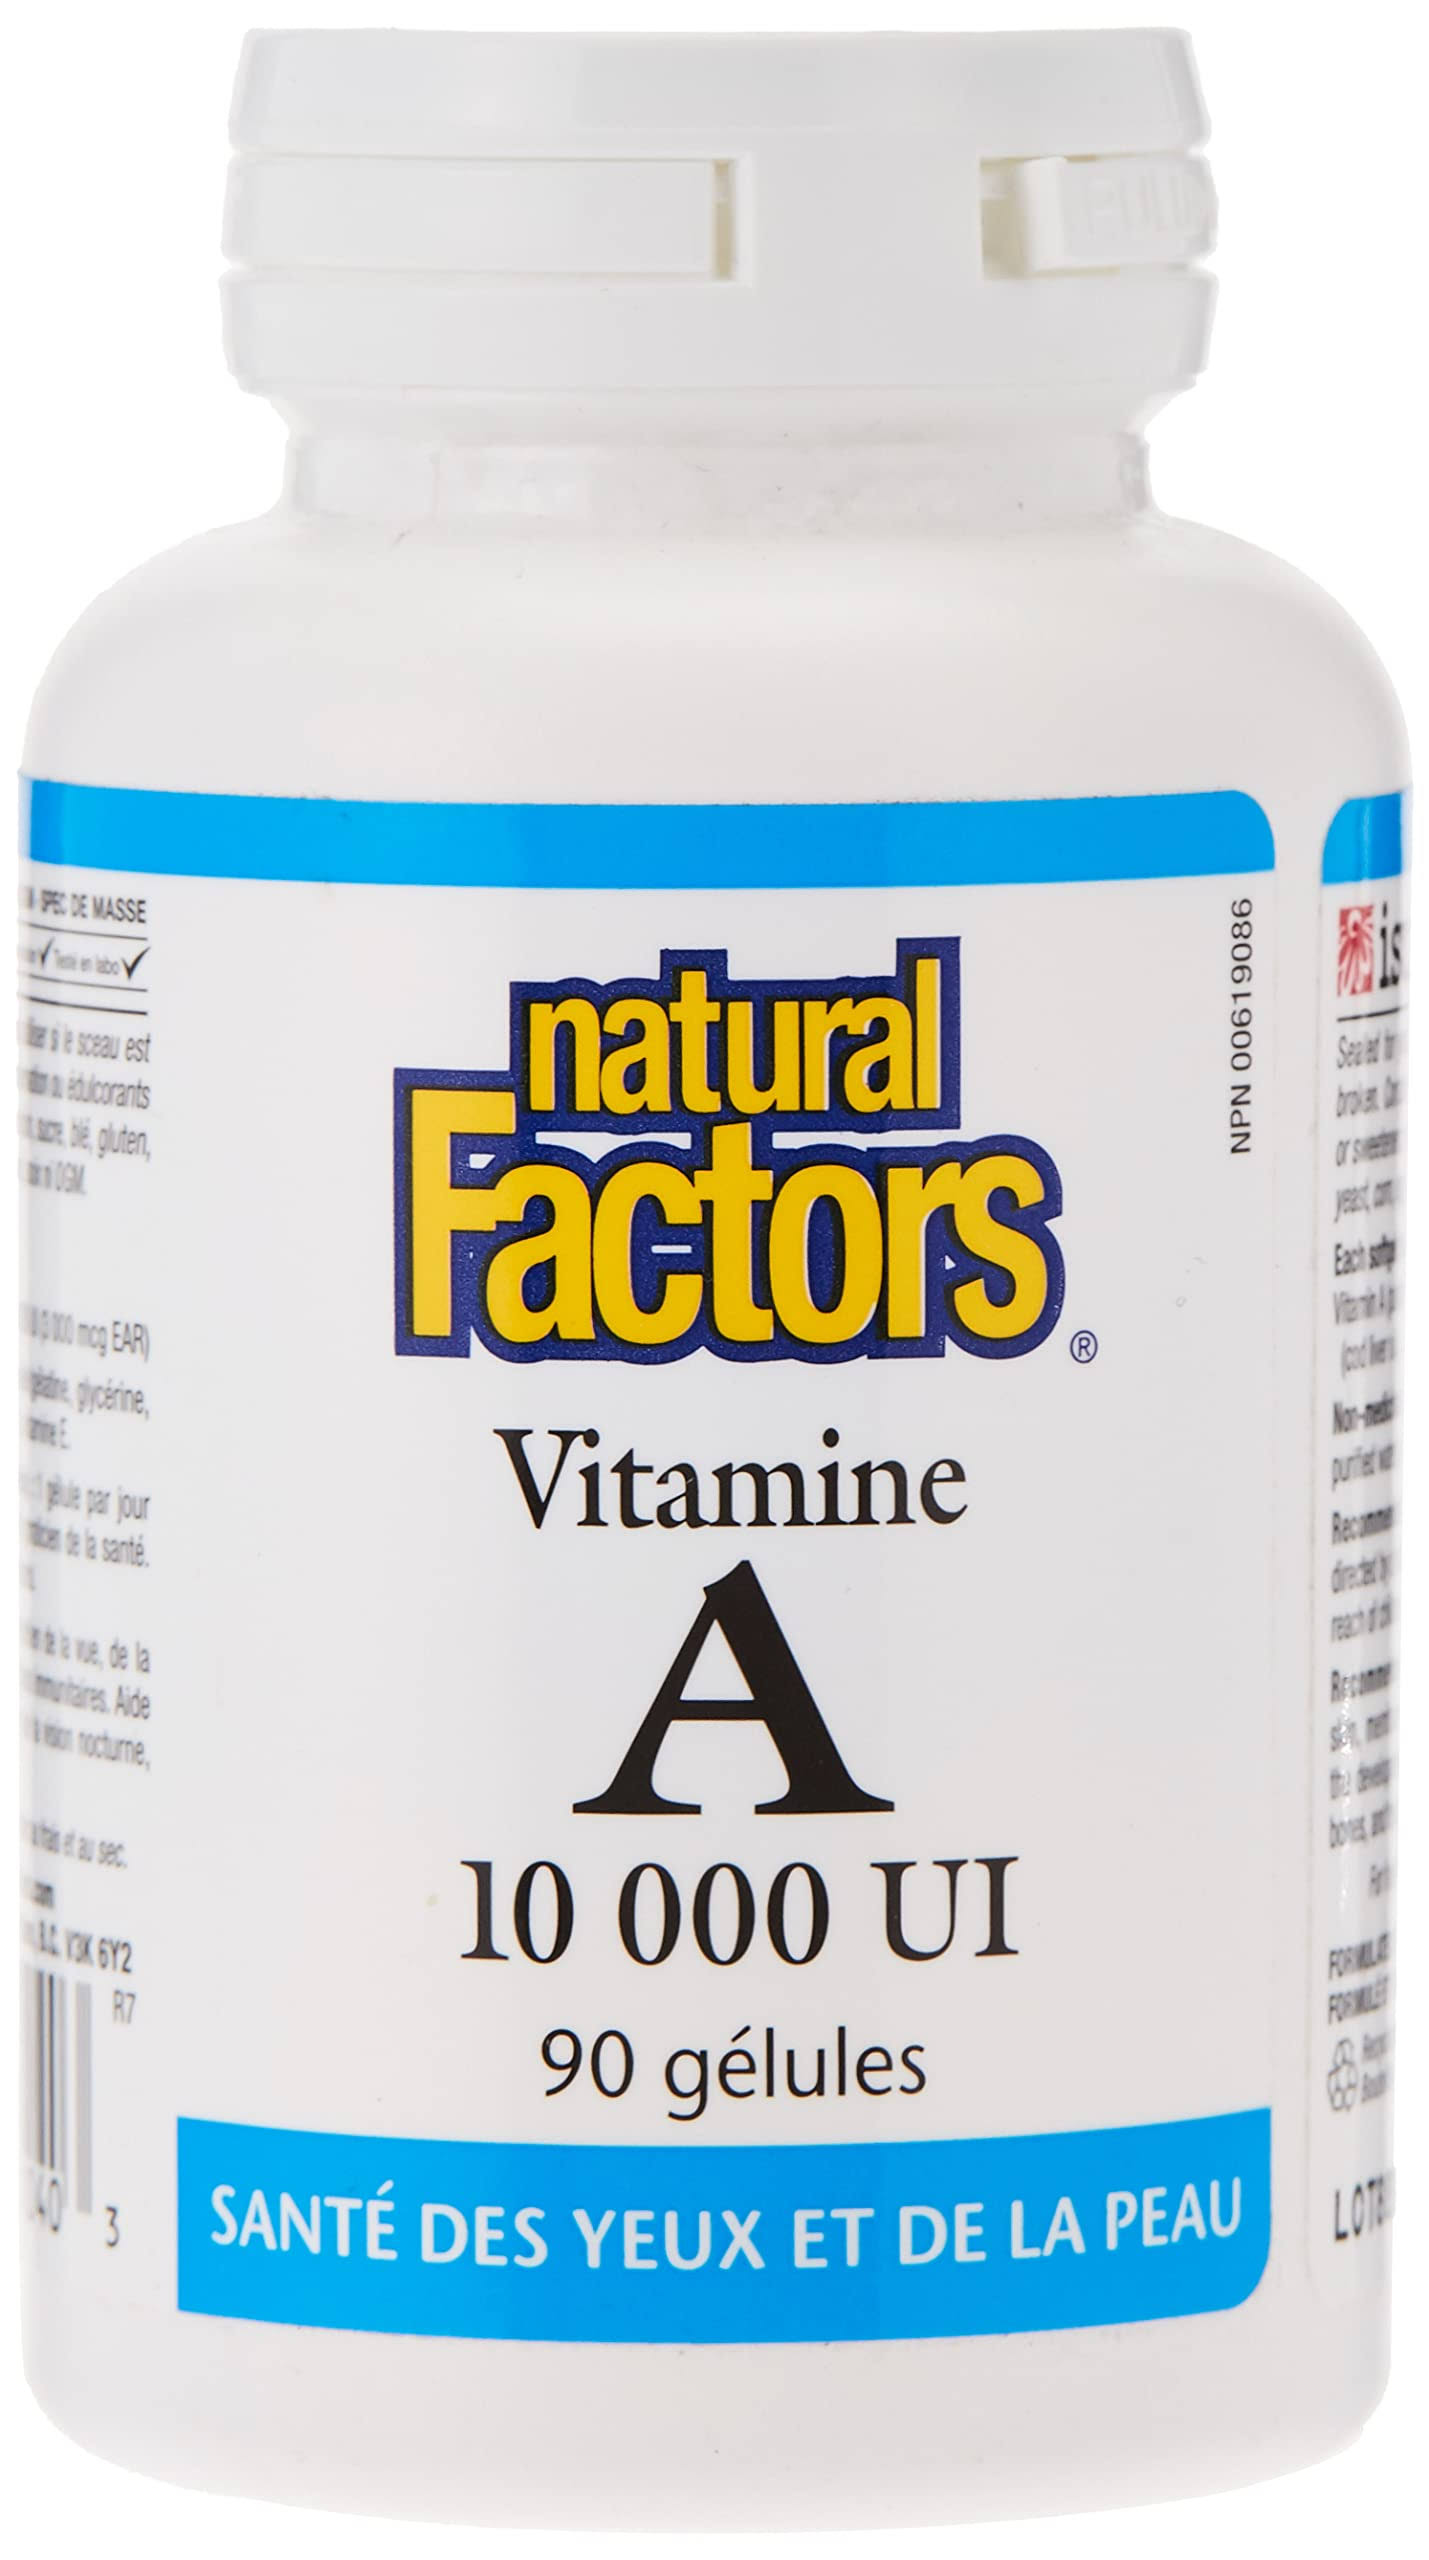 Natural Factors - Vitamin A 10,000 IU 90 Softgels